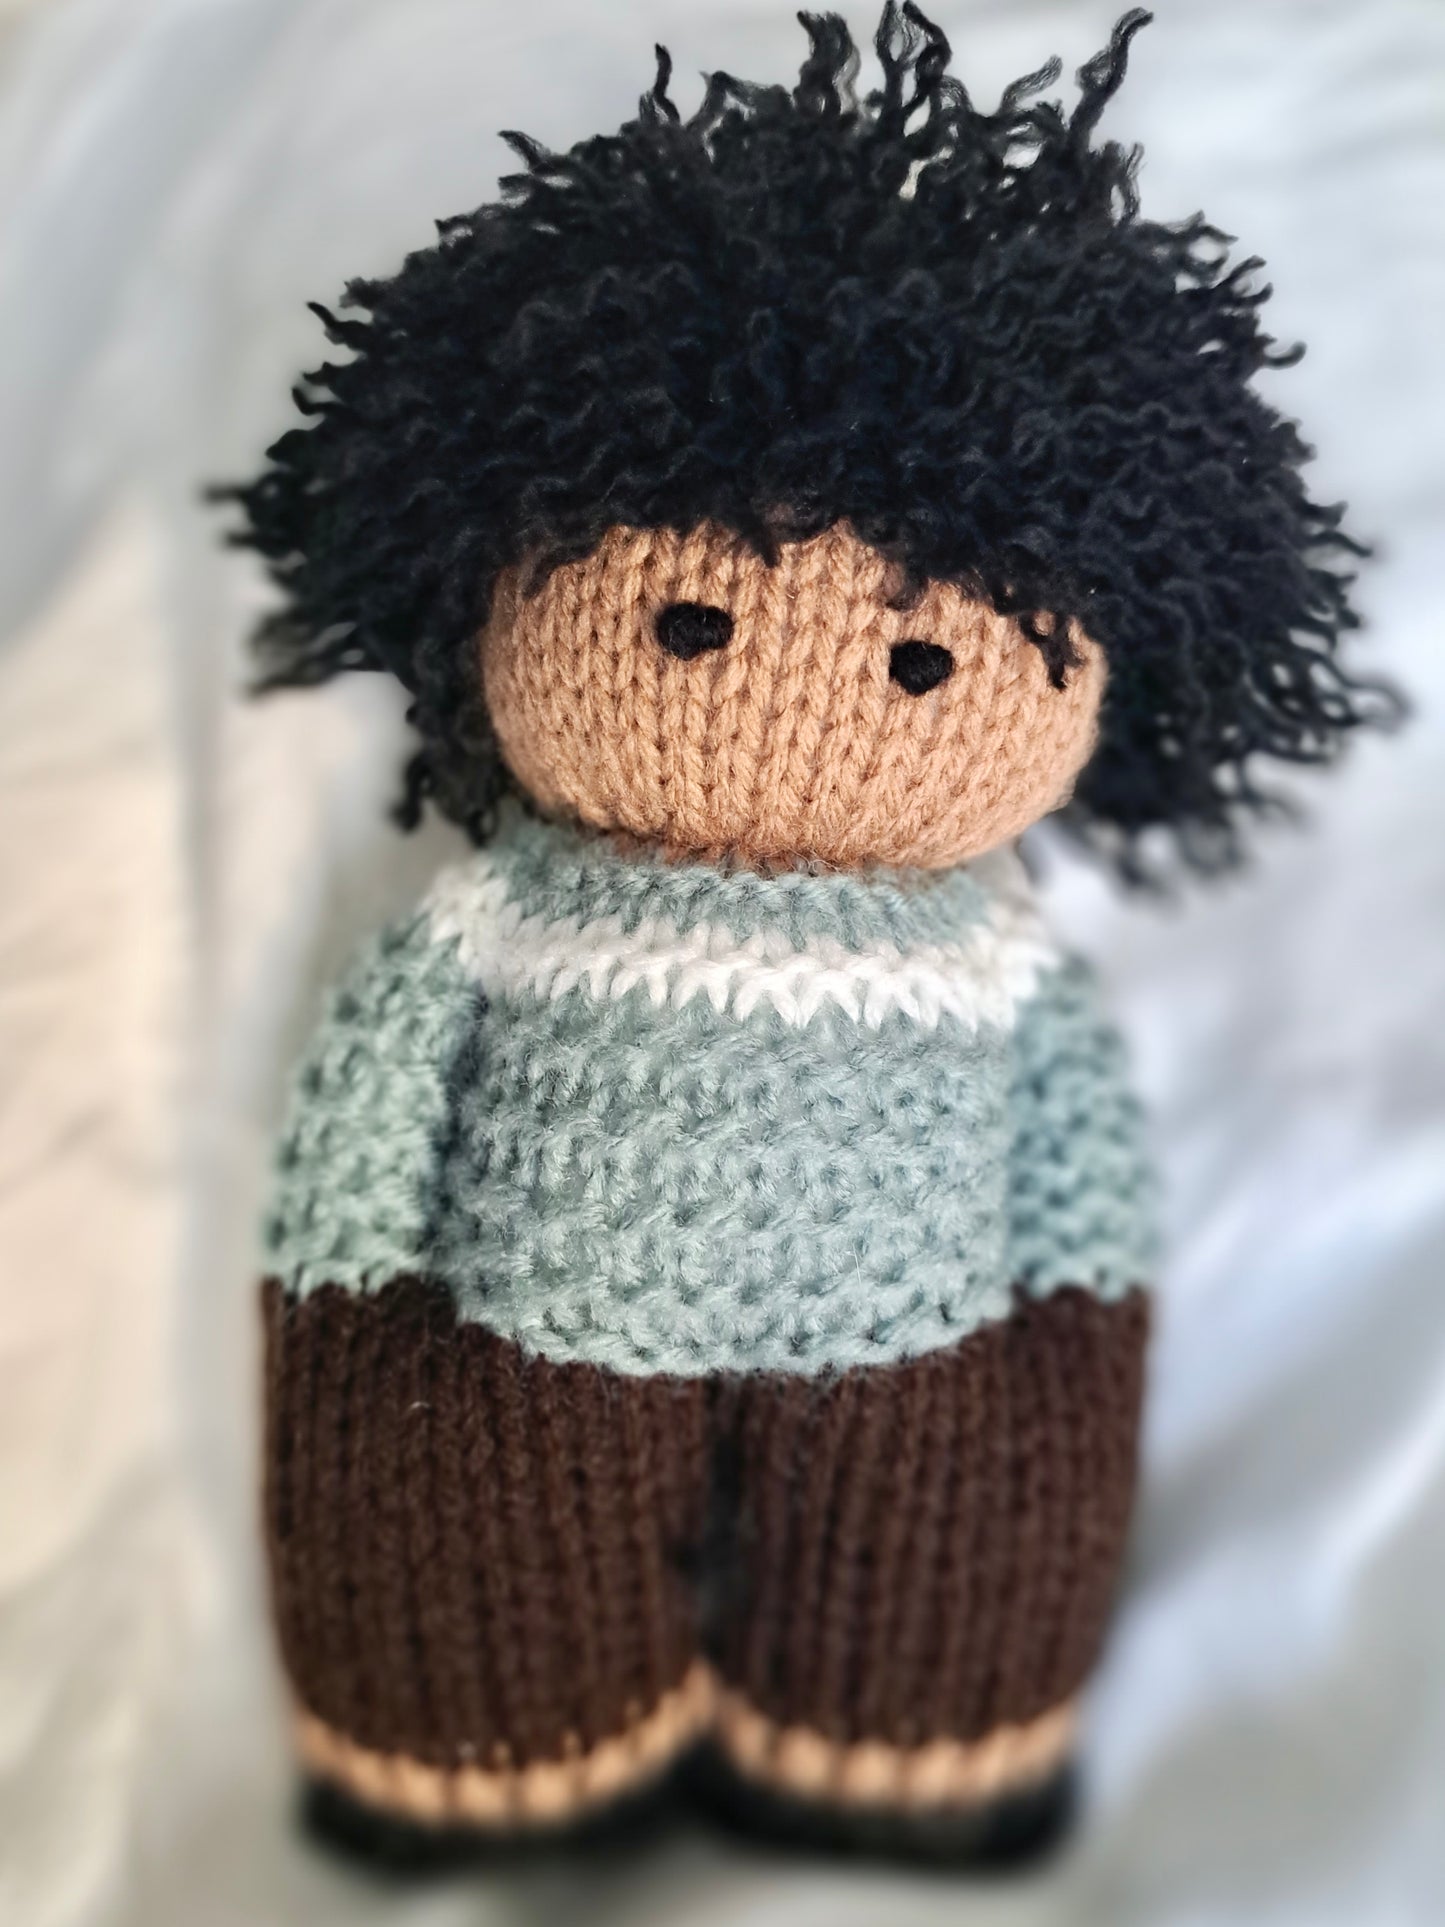 Black knit doll - boy with curls